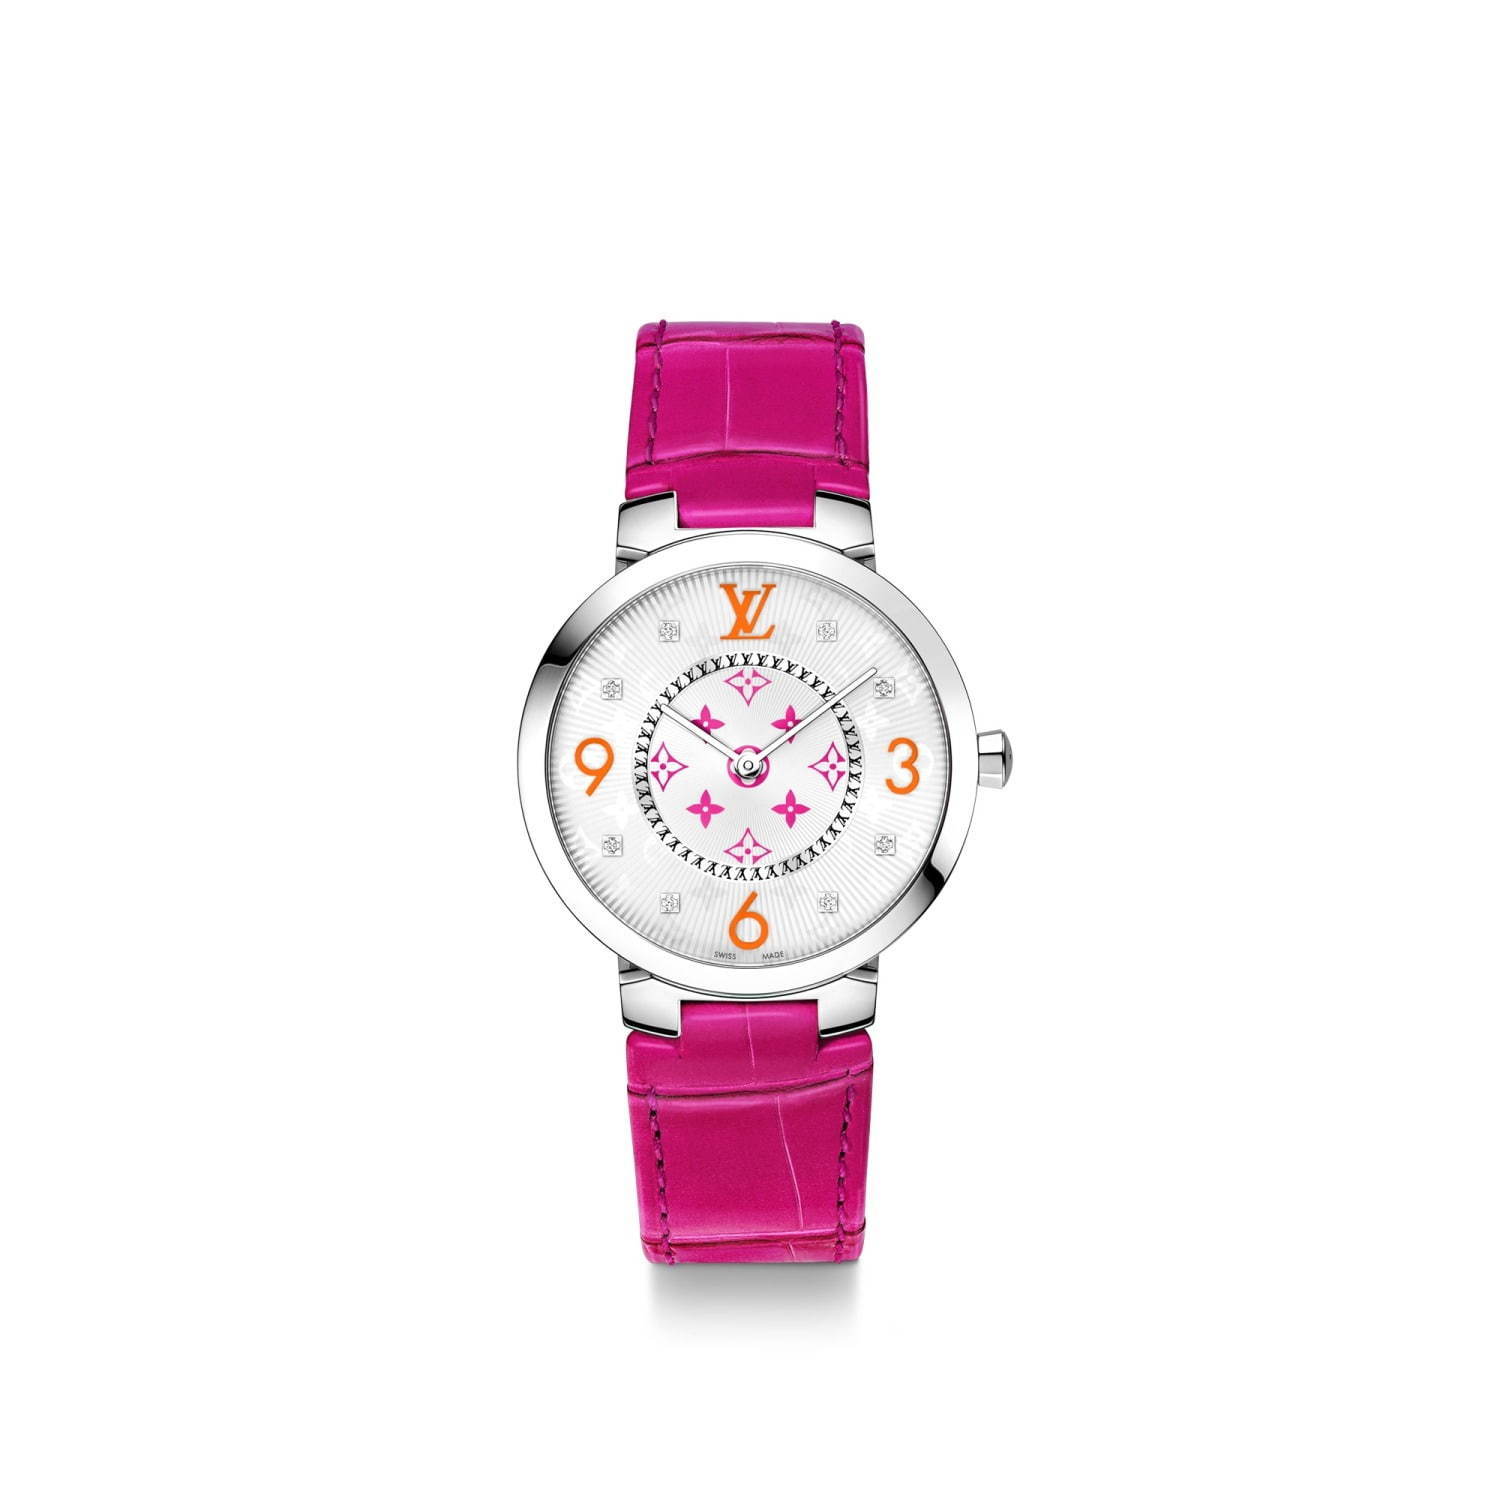 ルイ・ヴィトンの腕時計「タンブール スリム」“フューシャピンク 